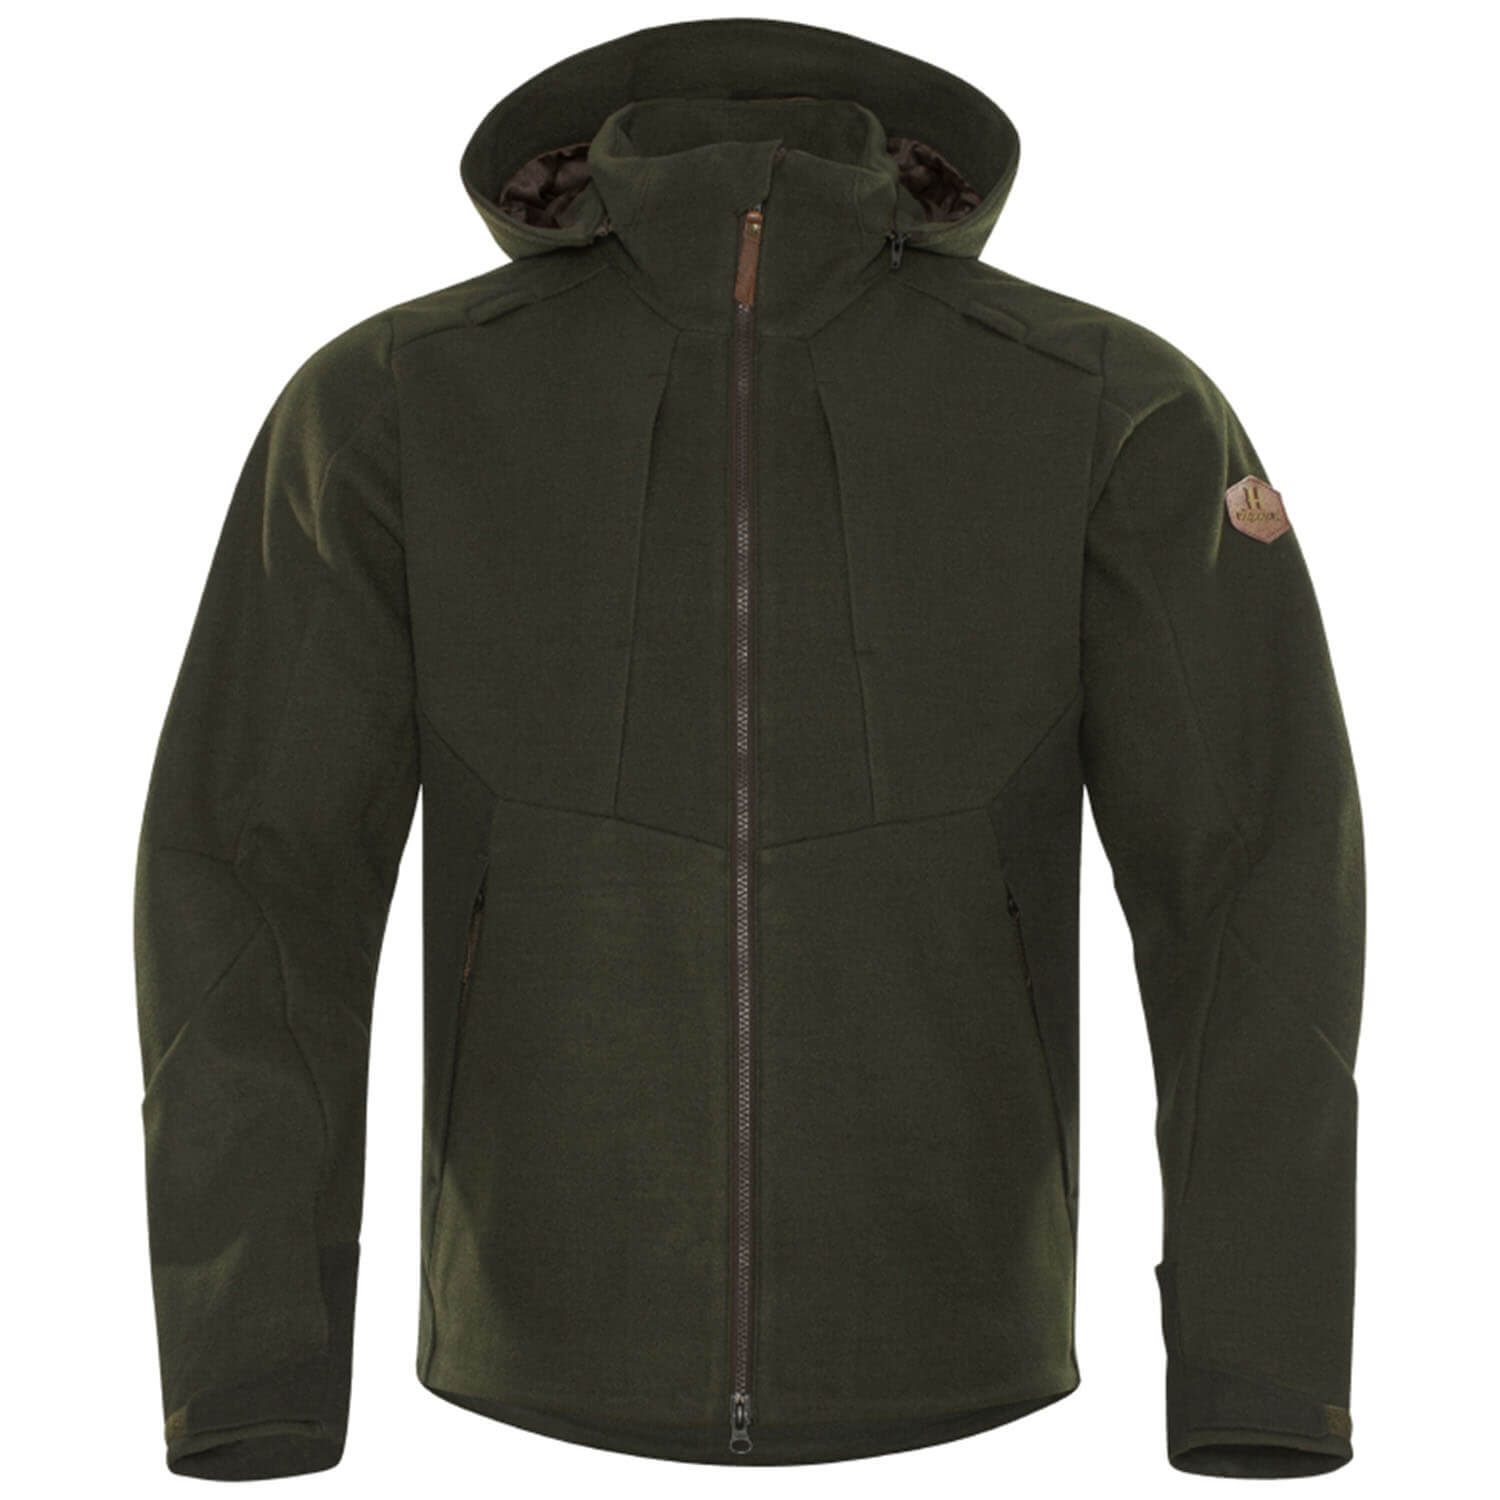 Härkila hunting jacket Metso hybrid - Hunting Jackets